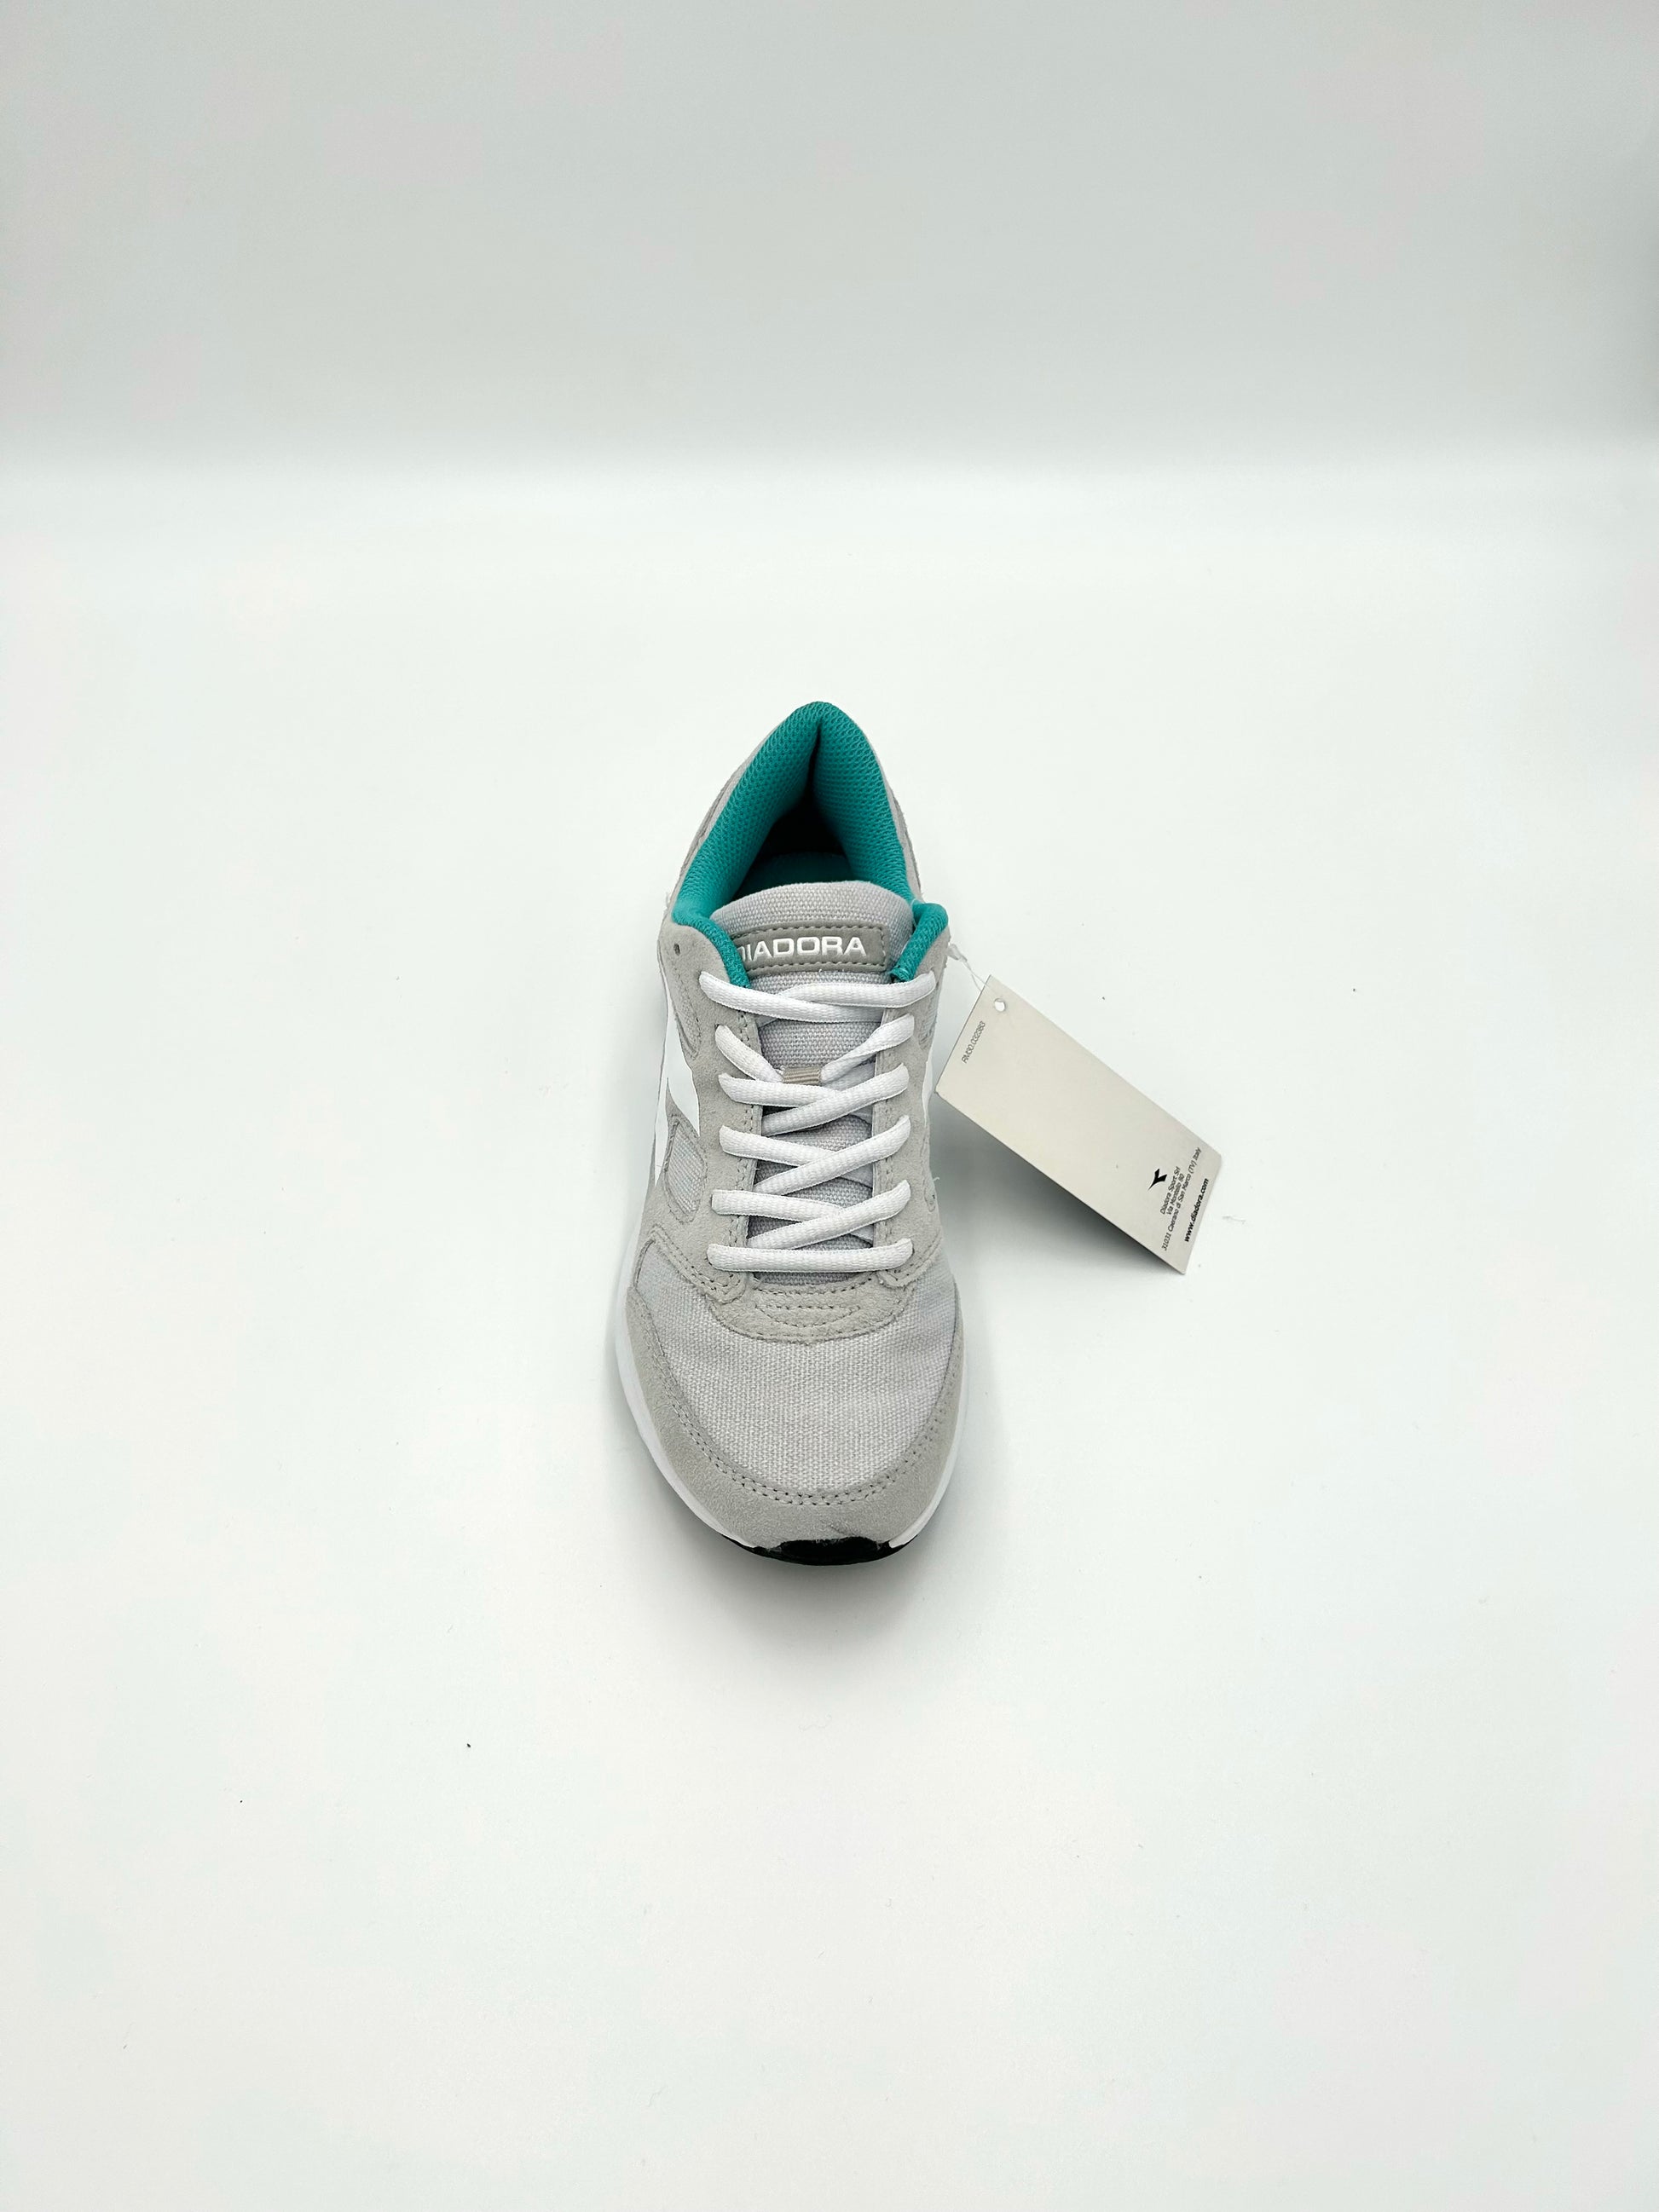 Diadora Sneakers Swan 7s - white and grey - Diadora